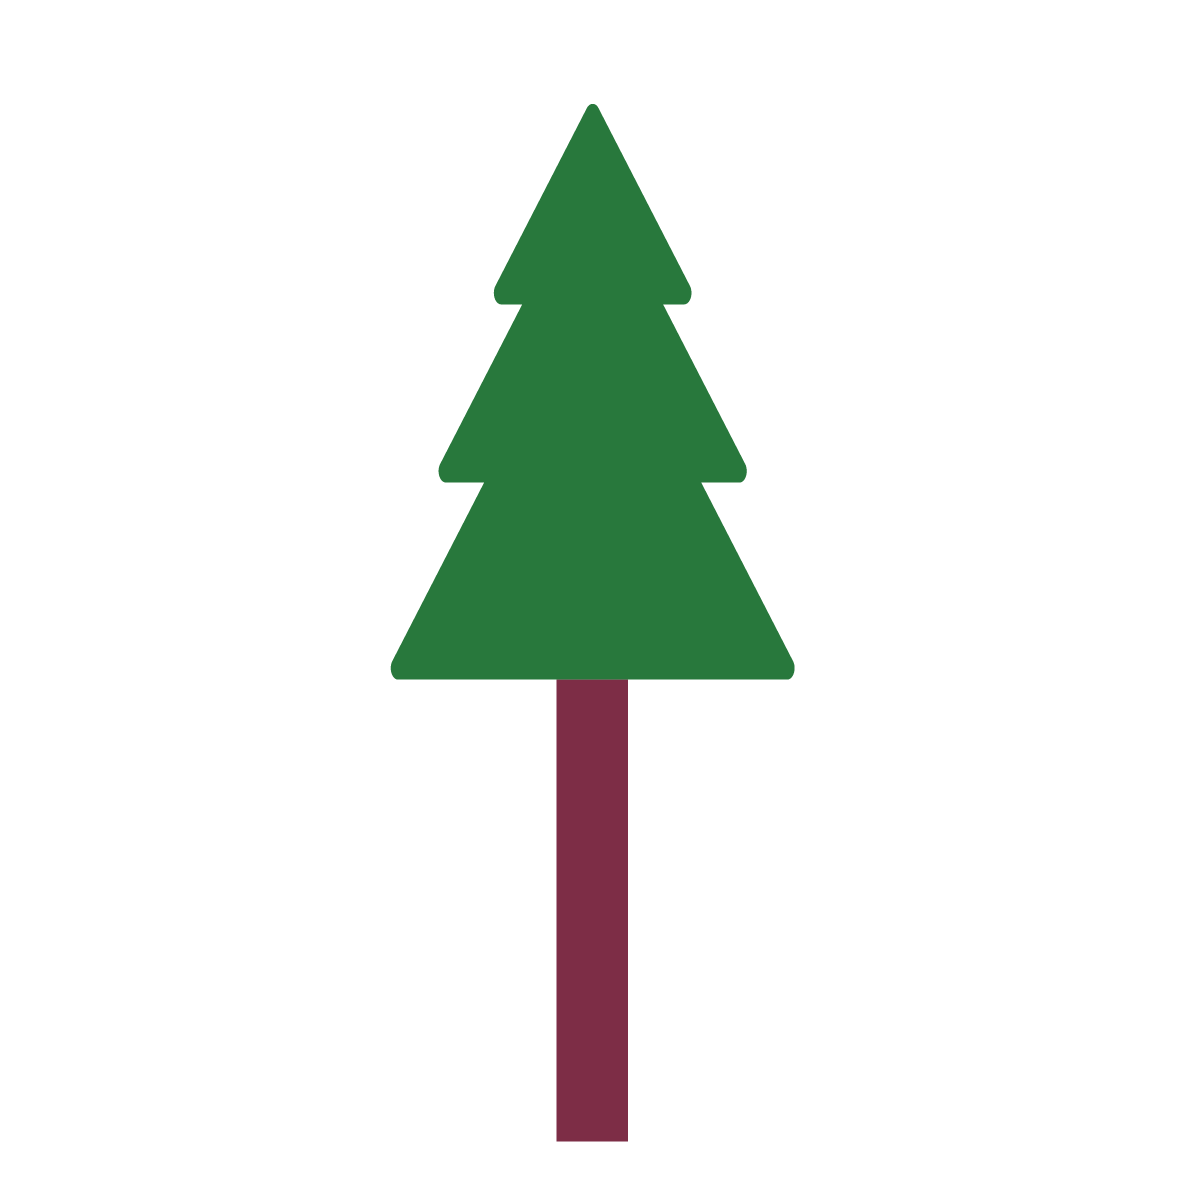 濃い緑と茶色でデザインしたシンプルなクリスマスツリーなので、好きなように飾り付けできます。クリスマスツリーのイラストを手作りするときのベースとしても使えます♪